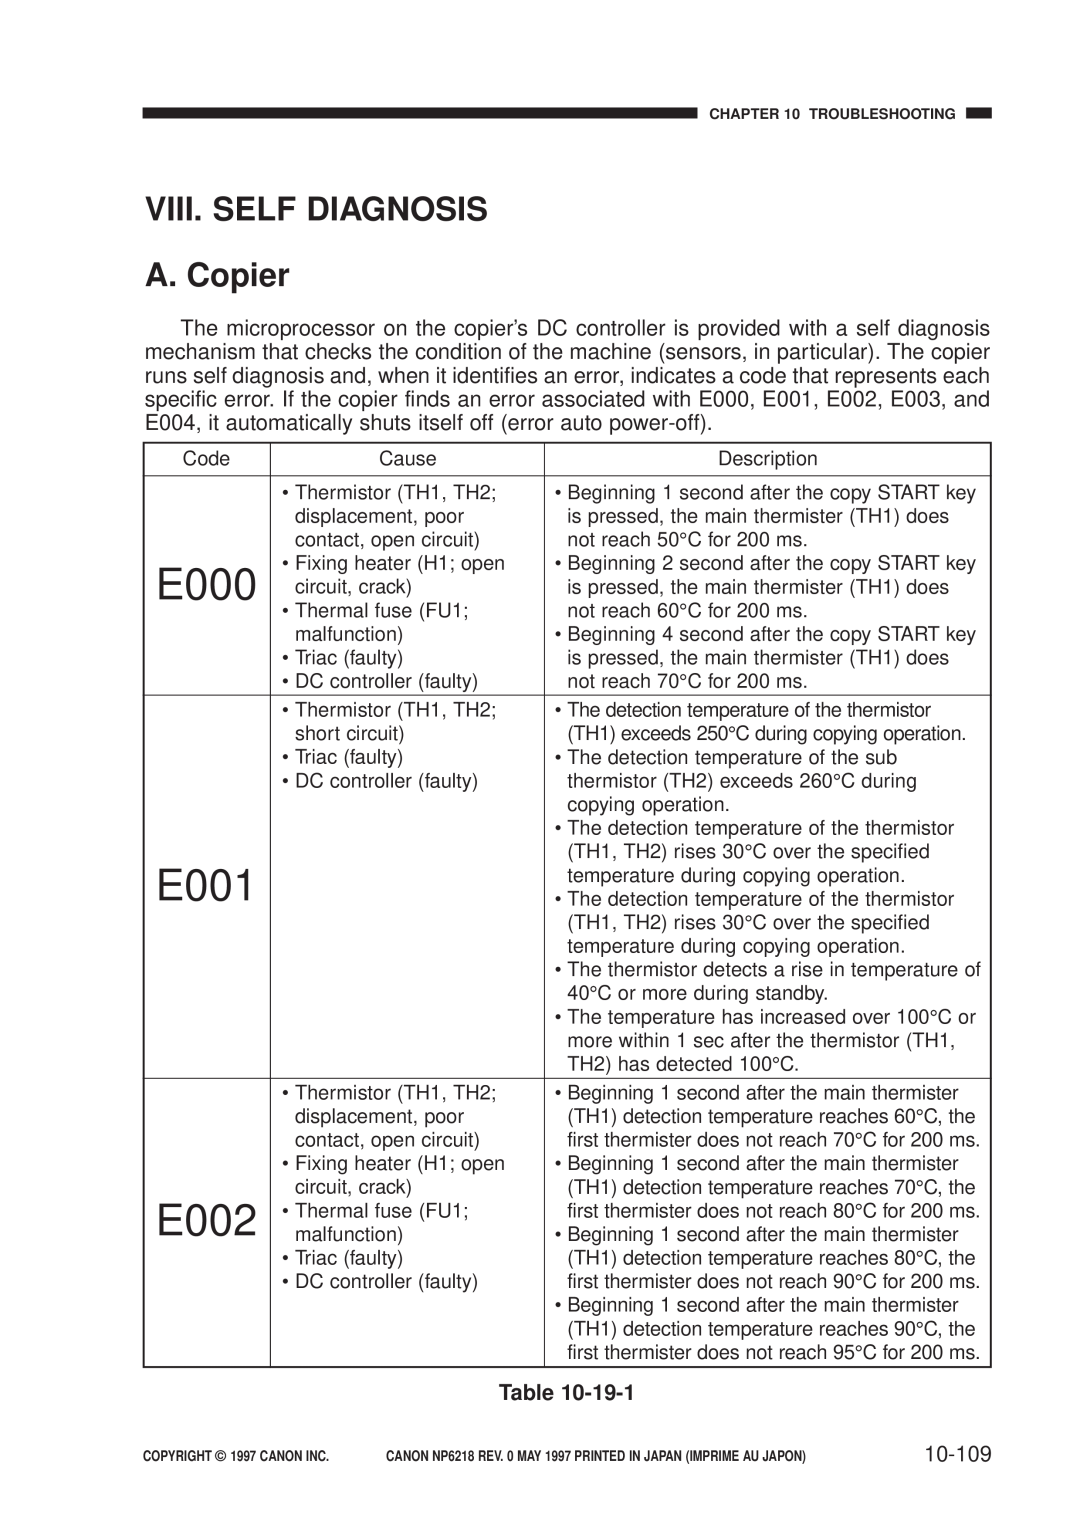 Canon FY8-13EX-000, NP6218 service manual E000, E001, E002, VIII. SELF DIAGNOSIS A. Copier, 10-109 